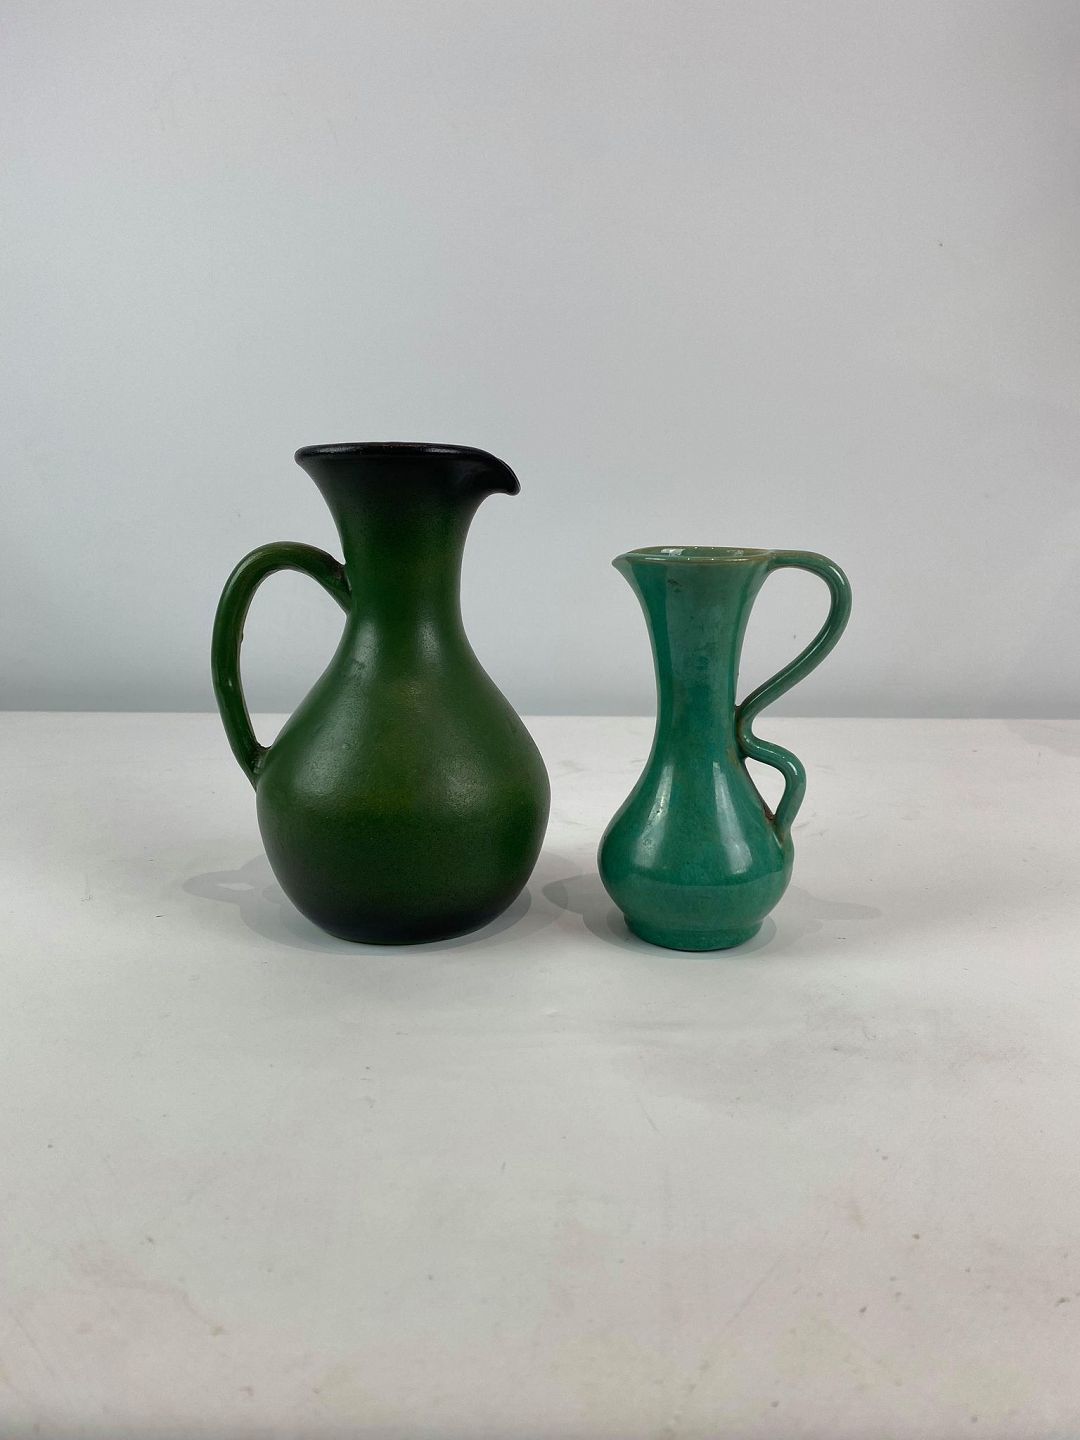 Keramik vaser af dansk design fra * 5000m2 udstilling - Osted & Design